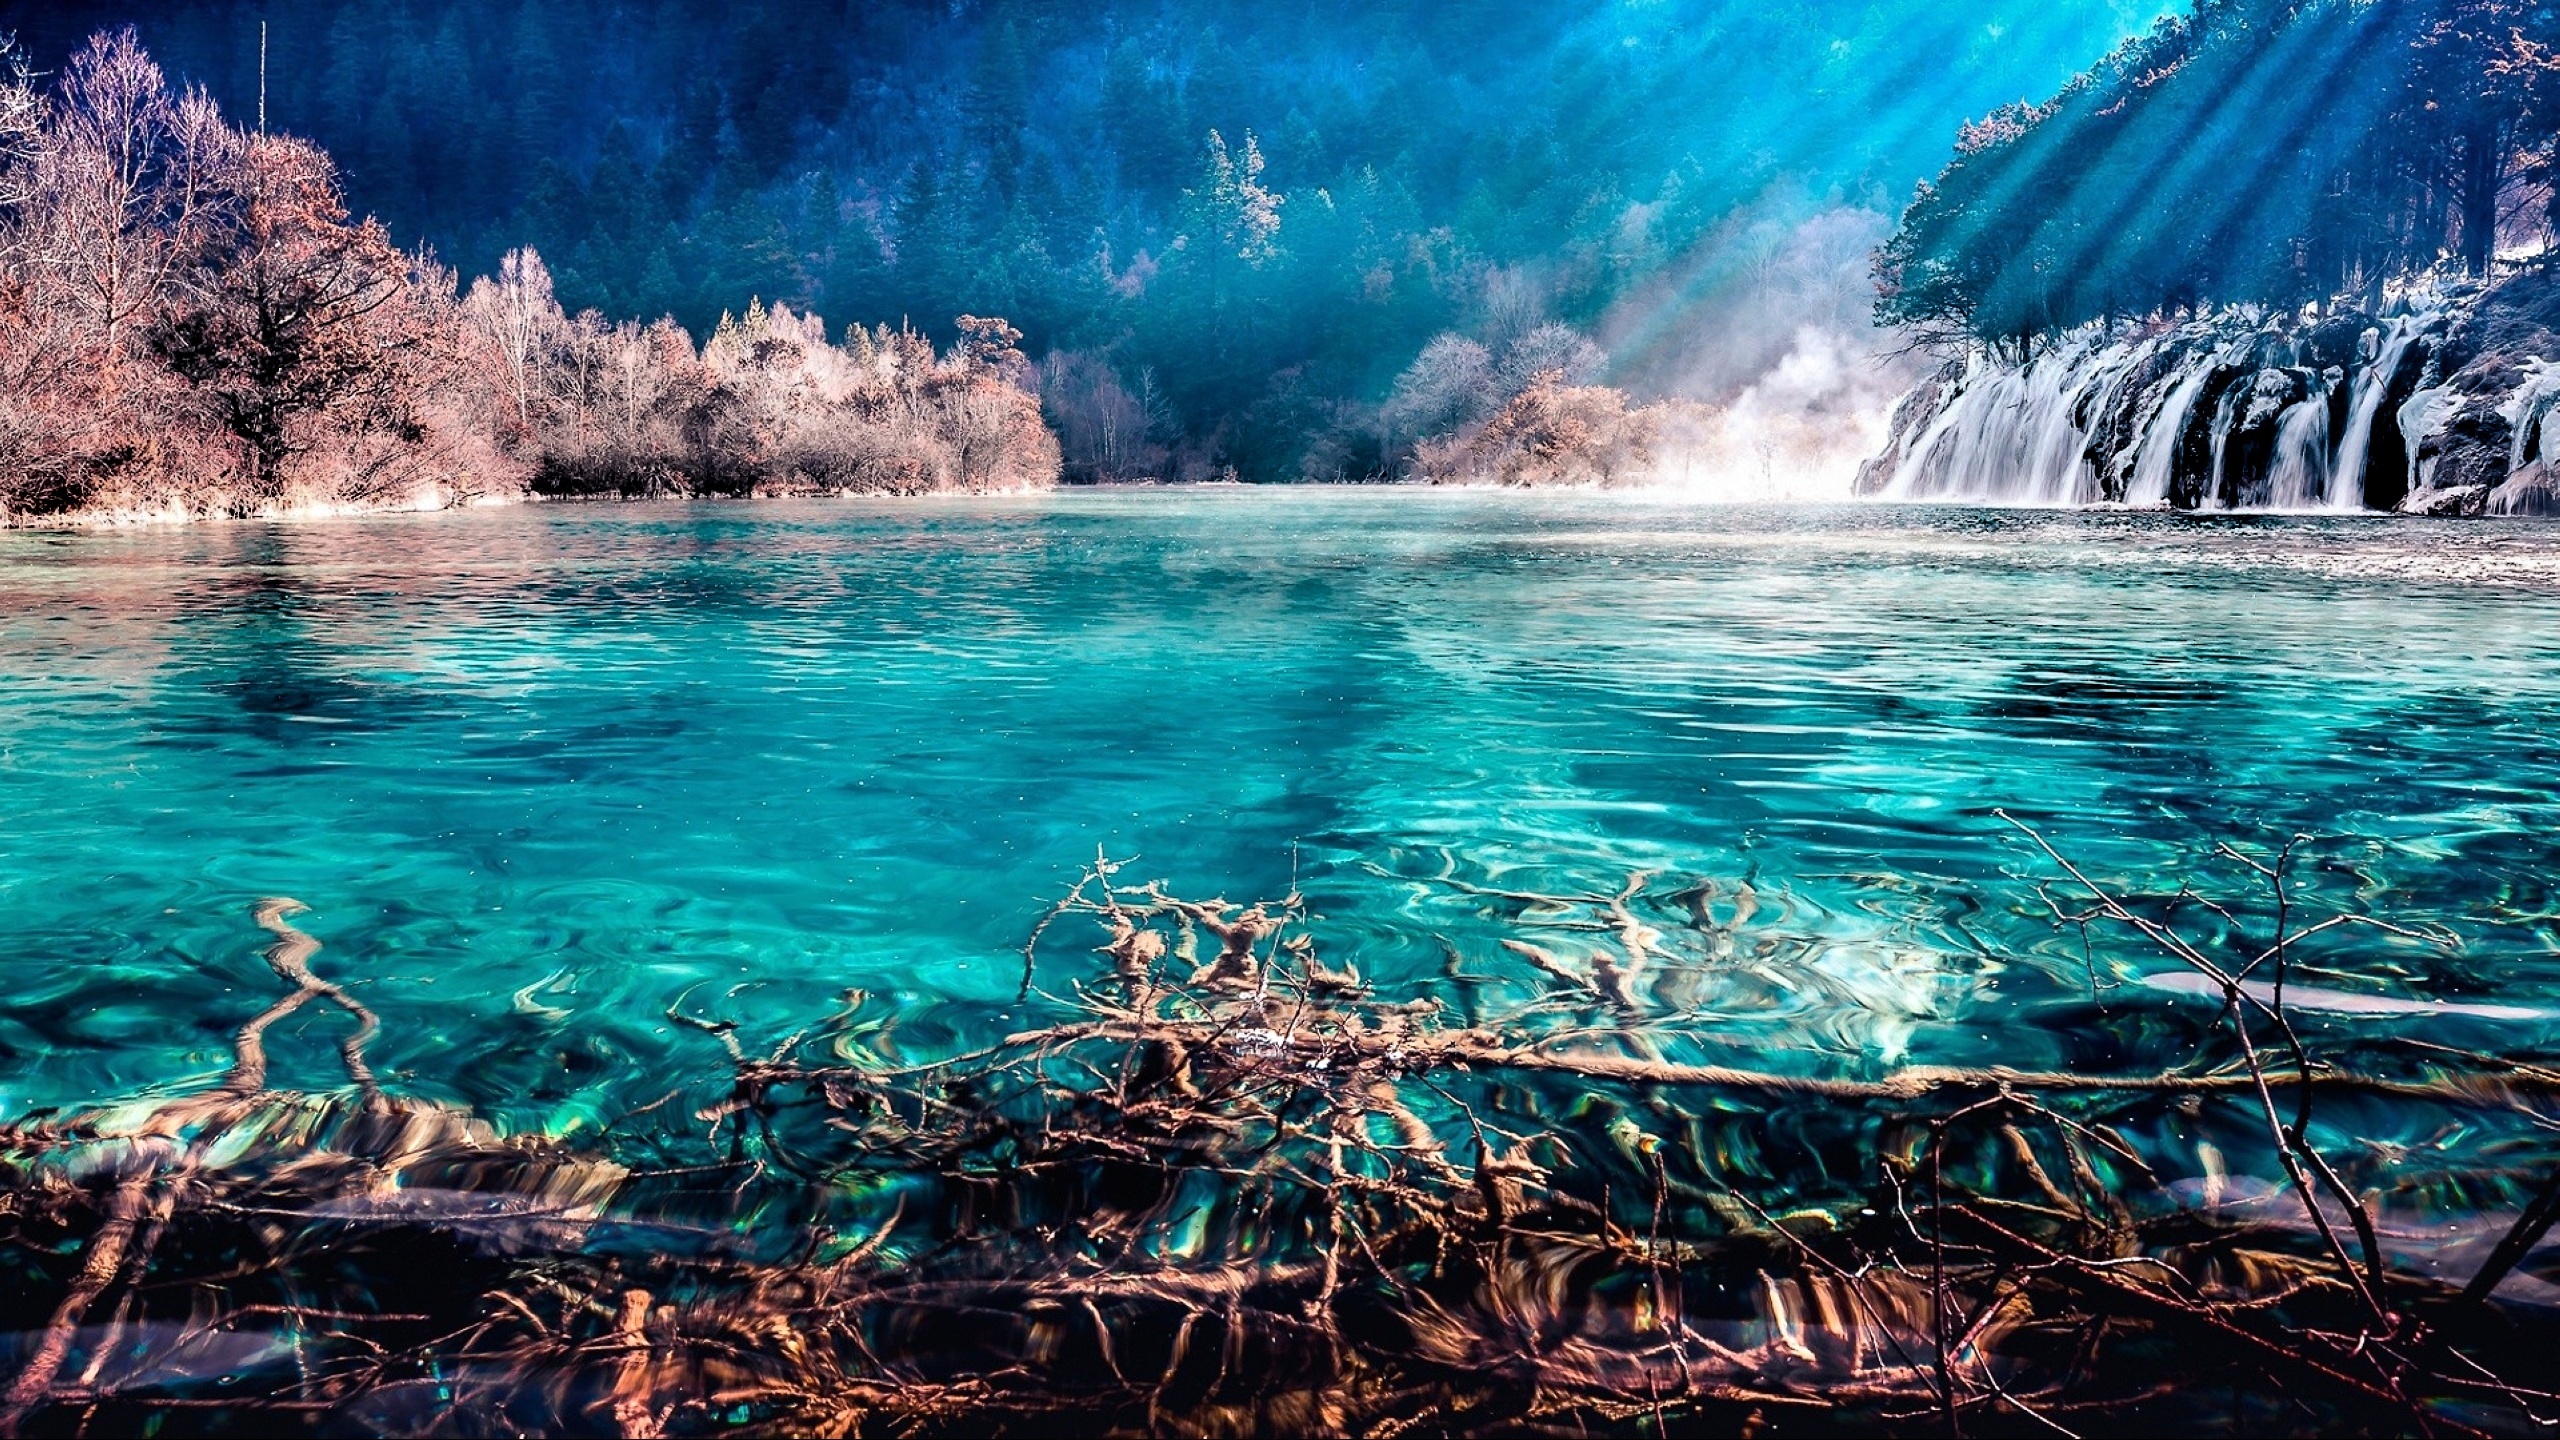 Вода озеро свет. Бирюзовое озеро, национальный парк Цзючжайгоу, Китай. Водопад « голубая Лагуна» ( г.холм). Водопад в Цзючжайгоу (Китай). Голубая Лагуна Исландия.